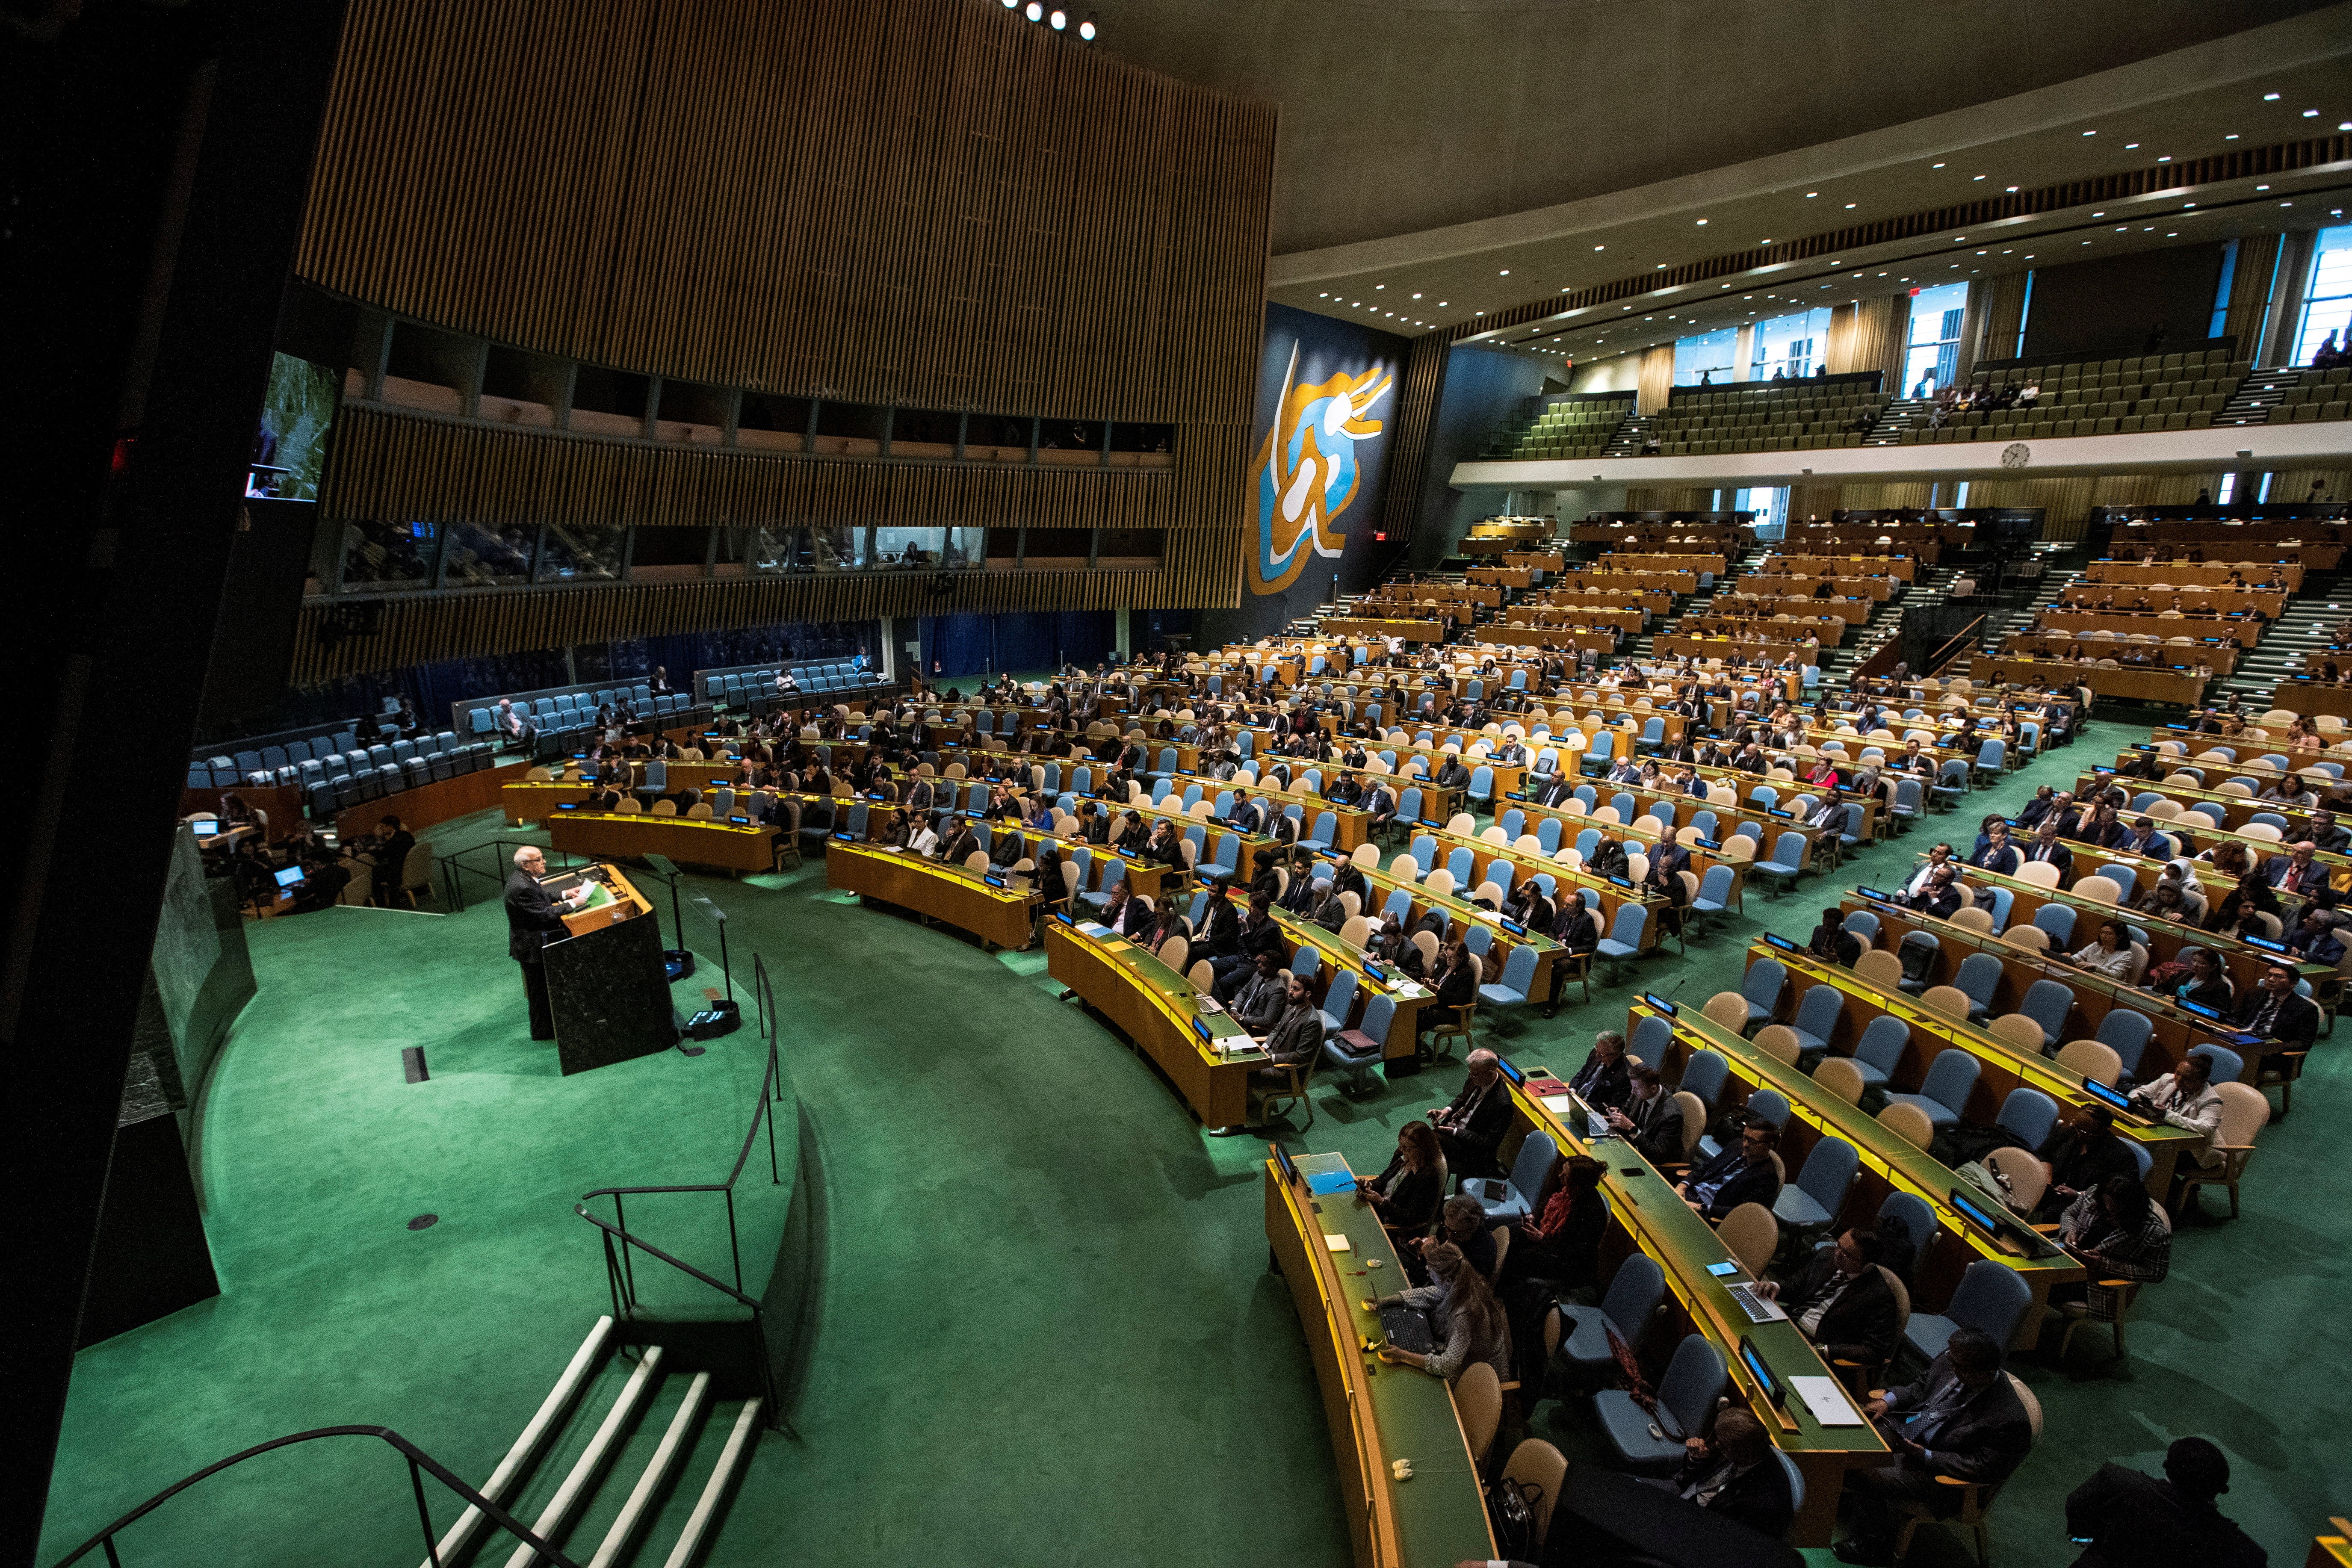 Assembleia Geral da ONU aprova resolução que reativa candidatura da Palestina a Estado-membro